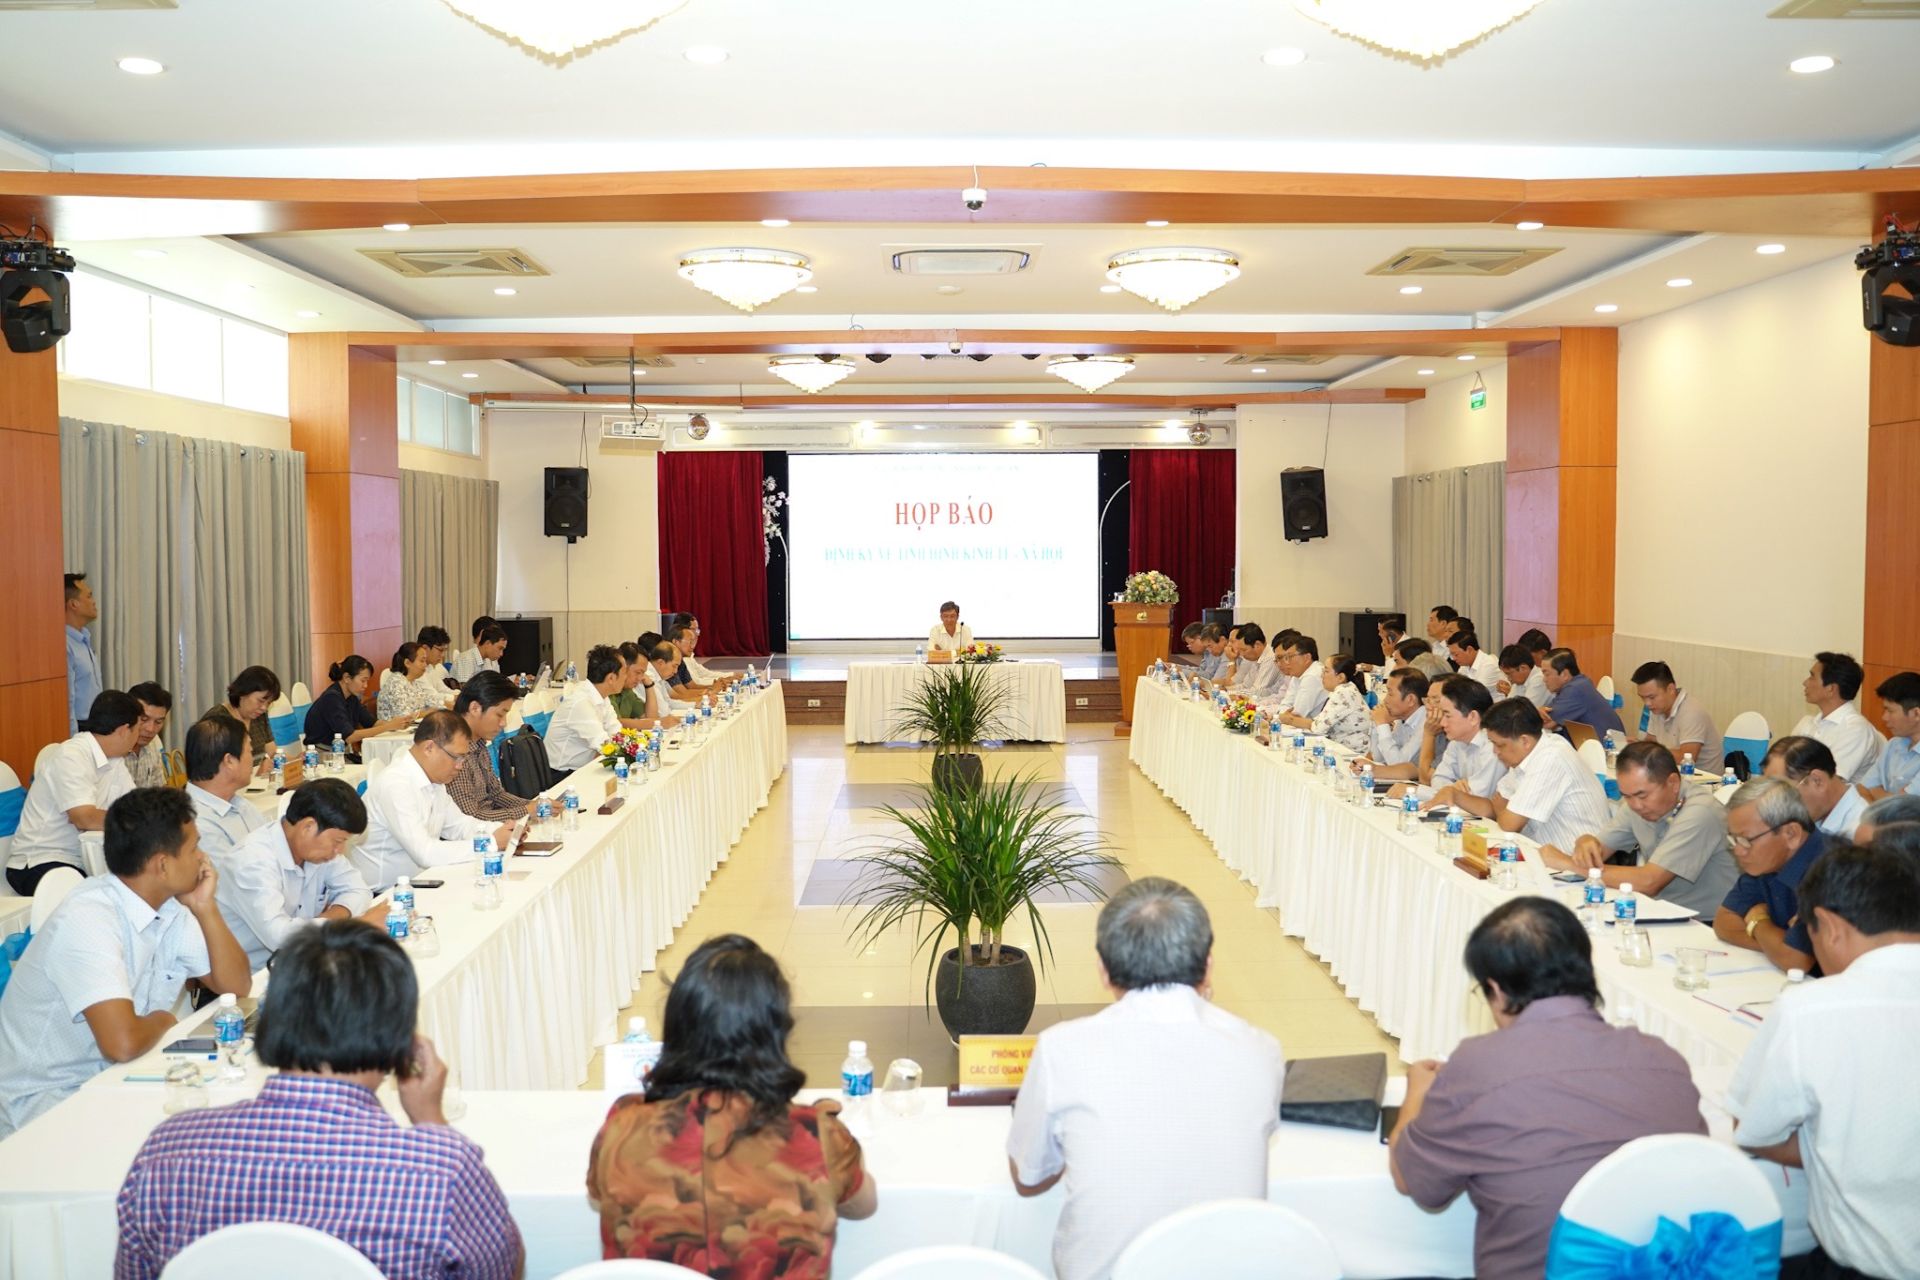 Đồng chí Nguyễn Minh – Tỉnh ủy viên, Phó Chủ tịch UBND tỉnh Bình Thuận chủ trì buổi họp báo